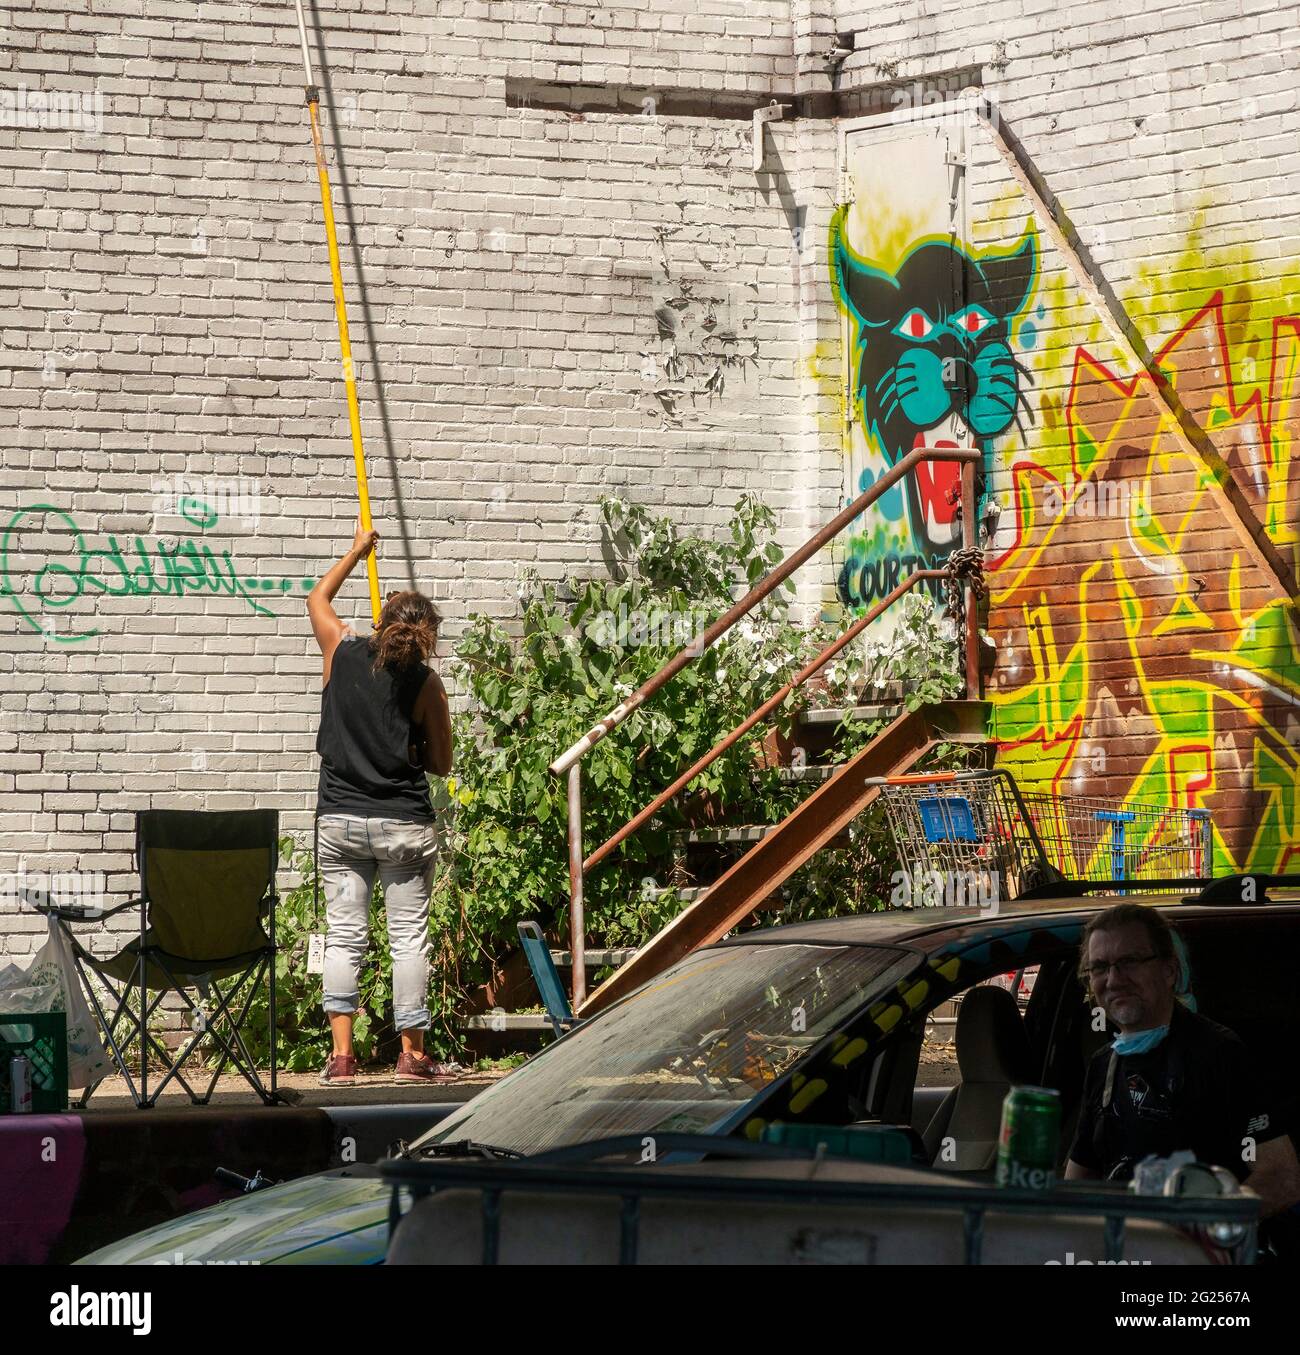 Hunderte strömen am Samstag, den 5. Juni 2021, zum Jersey City Mural Festival in den Hamilton Park in Jersey City, NJ. Musik und Partys brachten einiges mit, aber die wahre Attraktion waren die neuen Wandgemälde von Graffiti-Künstlern, die die über 50 Wände schmücken. (© Richard B. Levine) Stockfoto